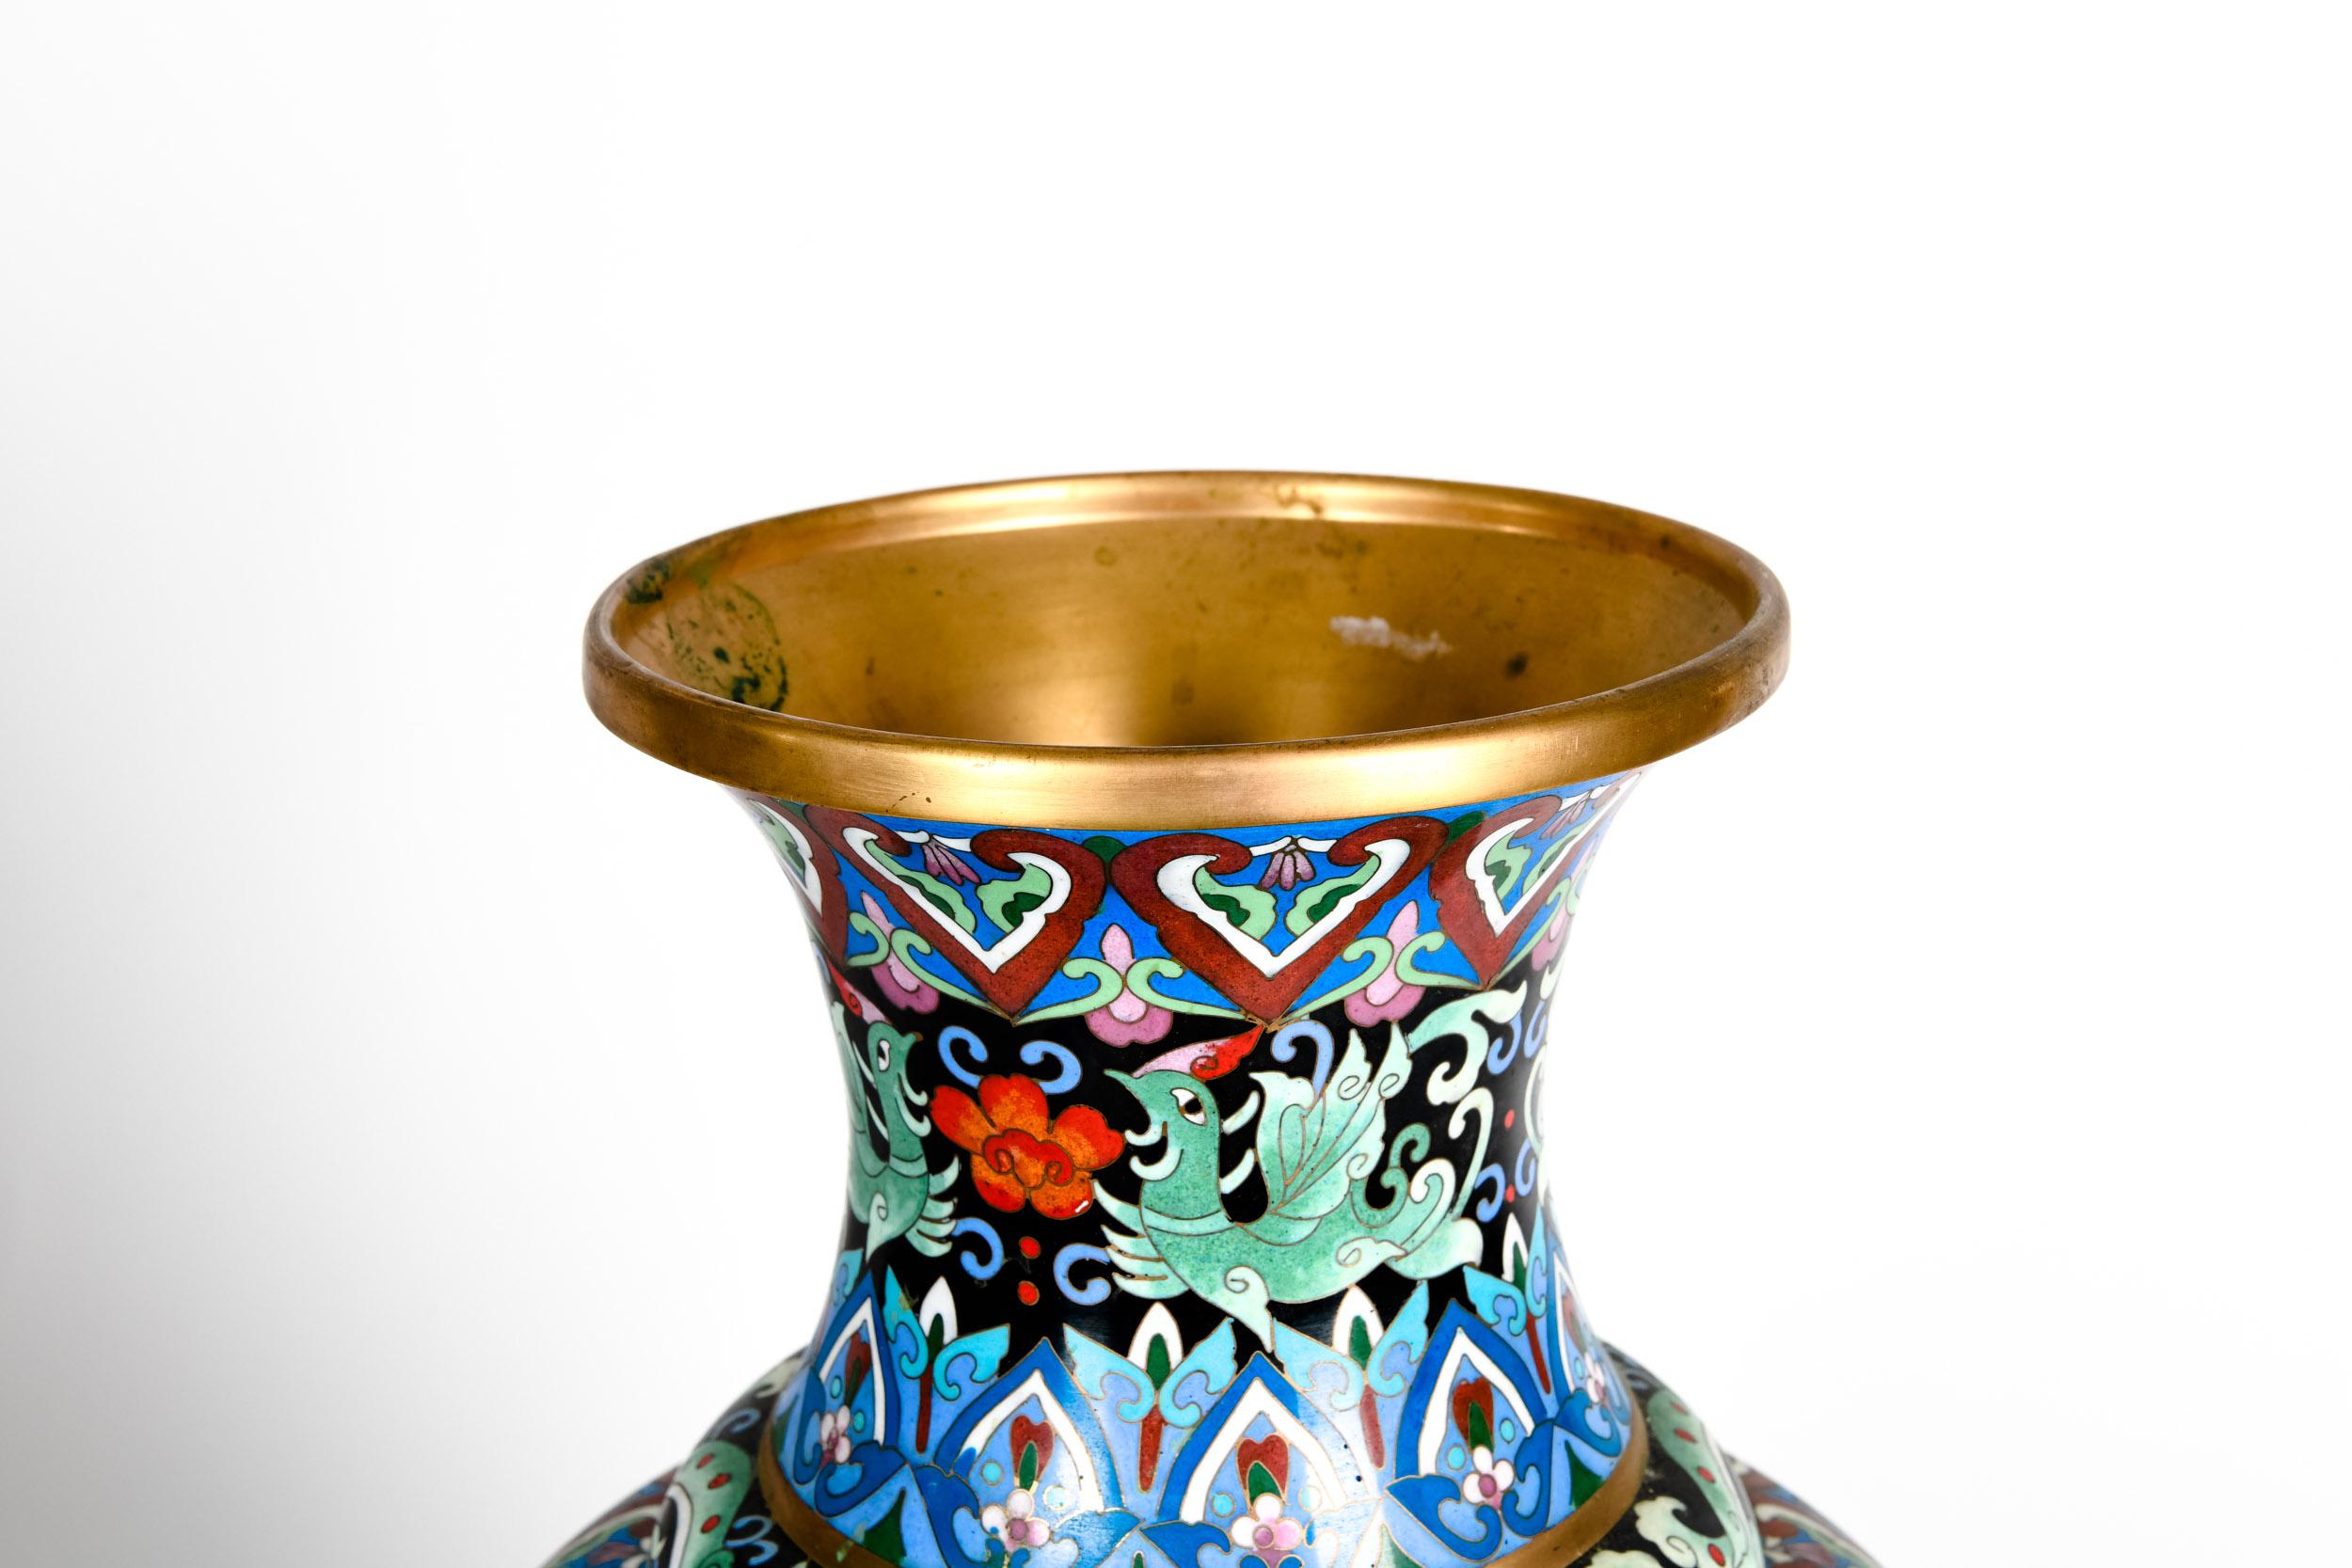 European Vintage Gilt Brass Interior Cloisonné Decorative Vase / Piece